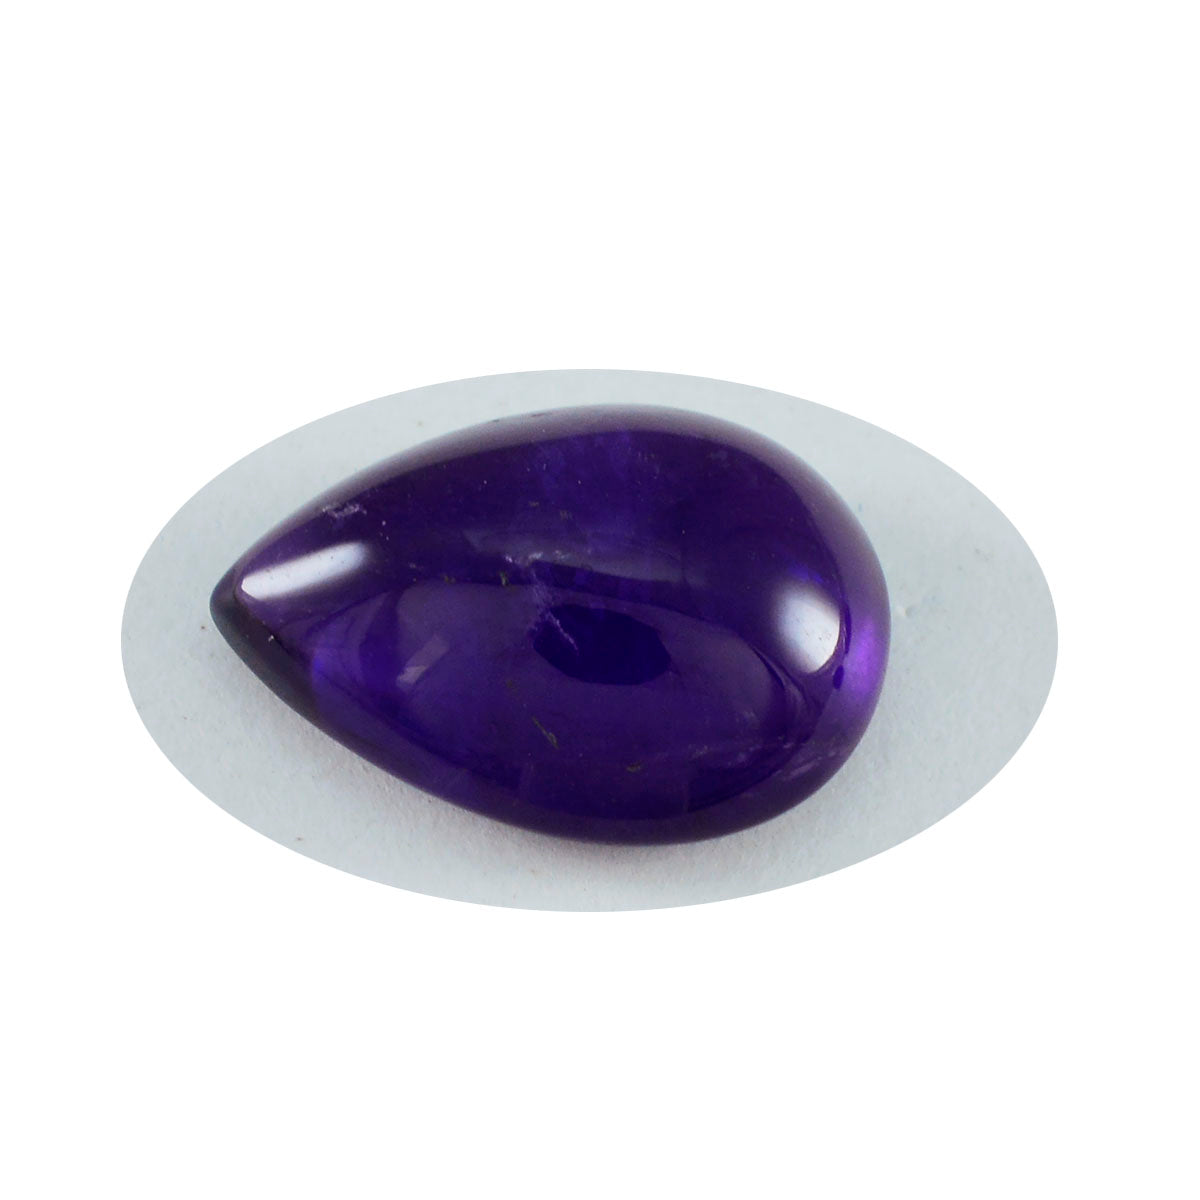 Riyogems 1 pieza cabujón de amatista púrpura 3x3 mm forma redonda piedra preciosa de calidad dulce